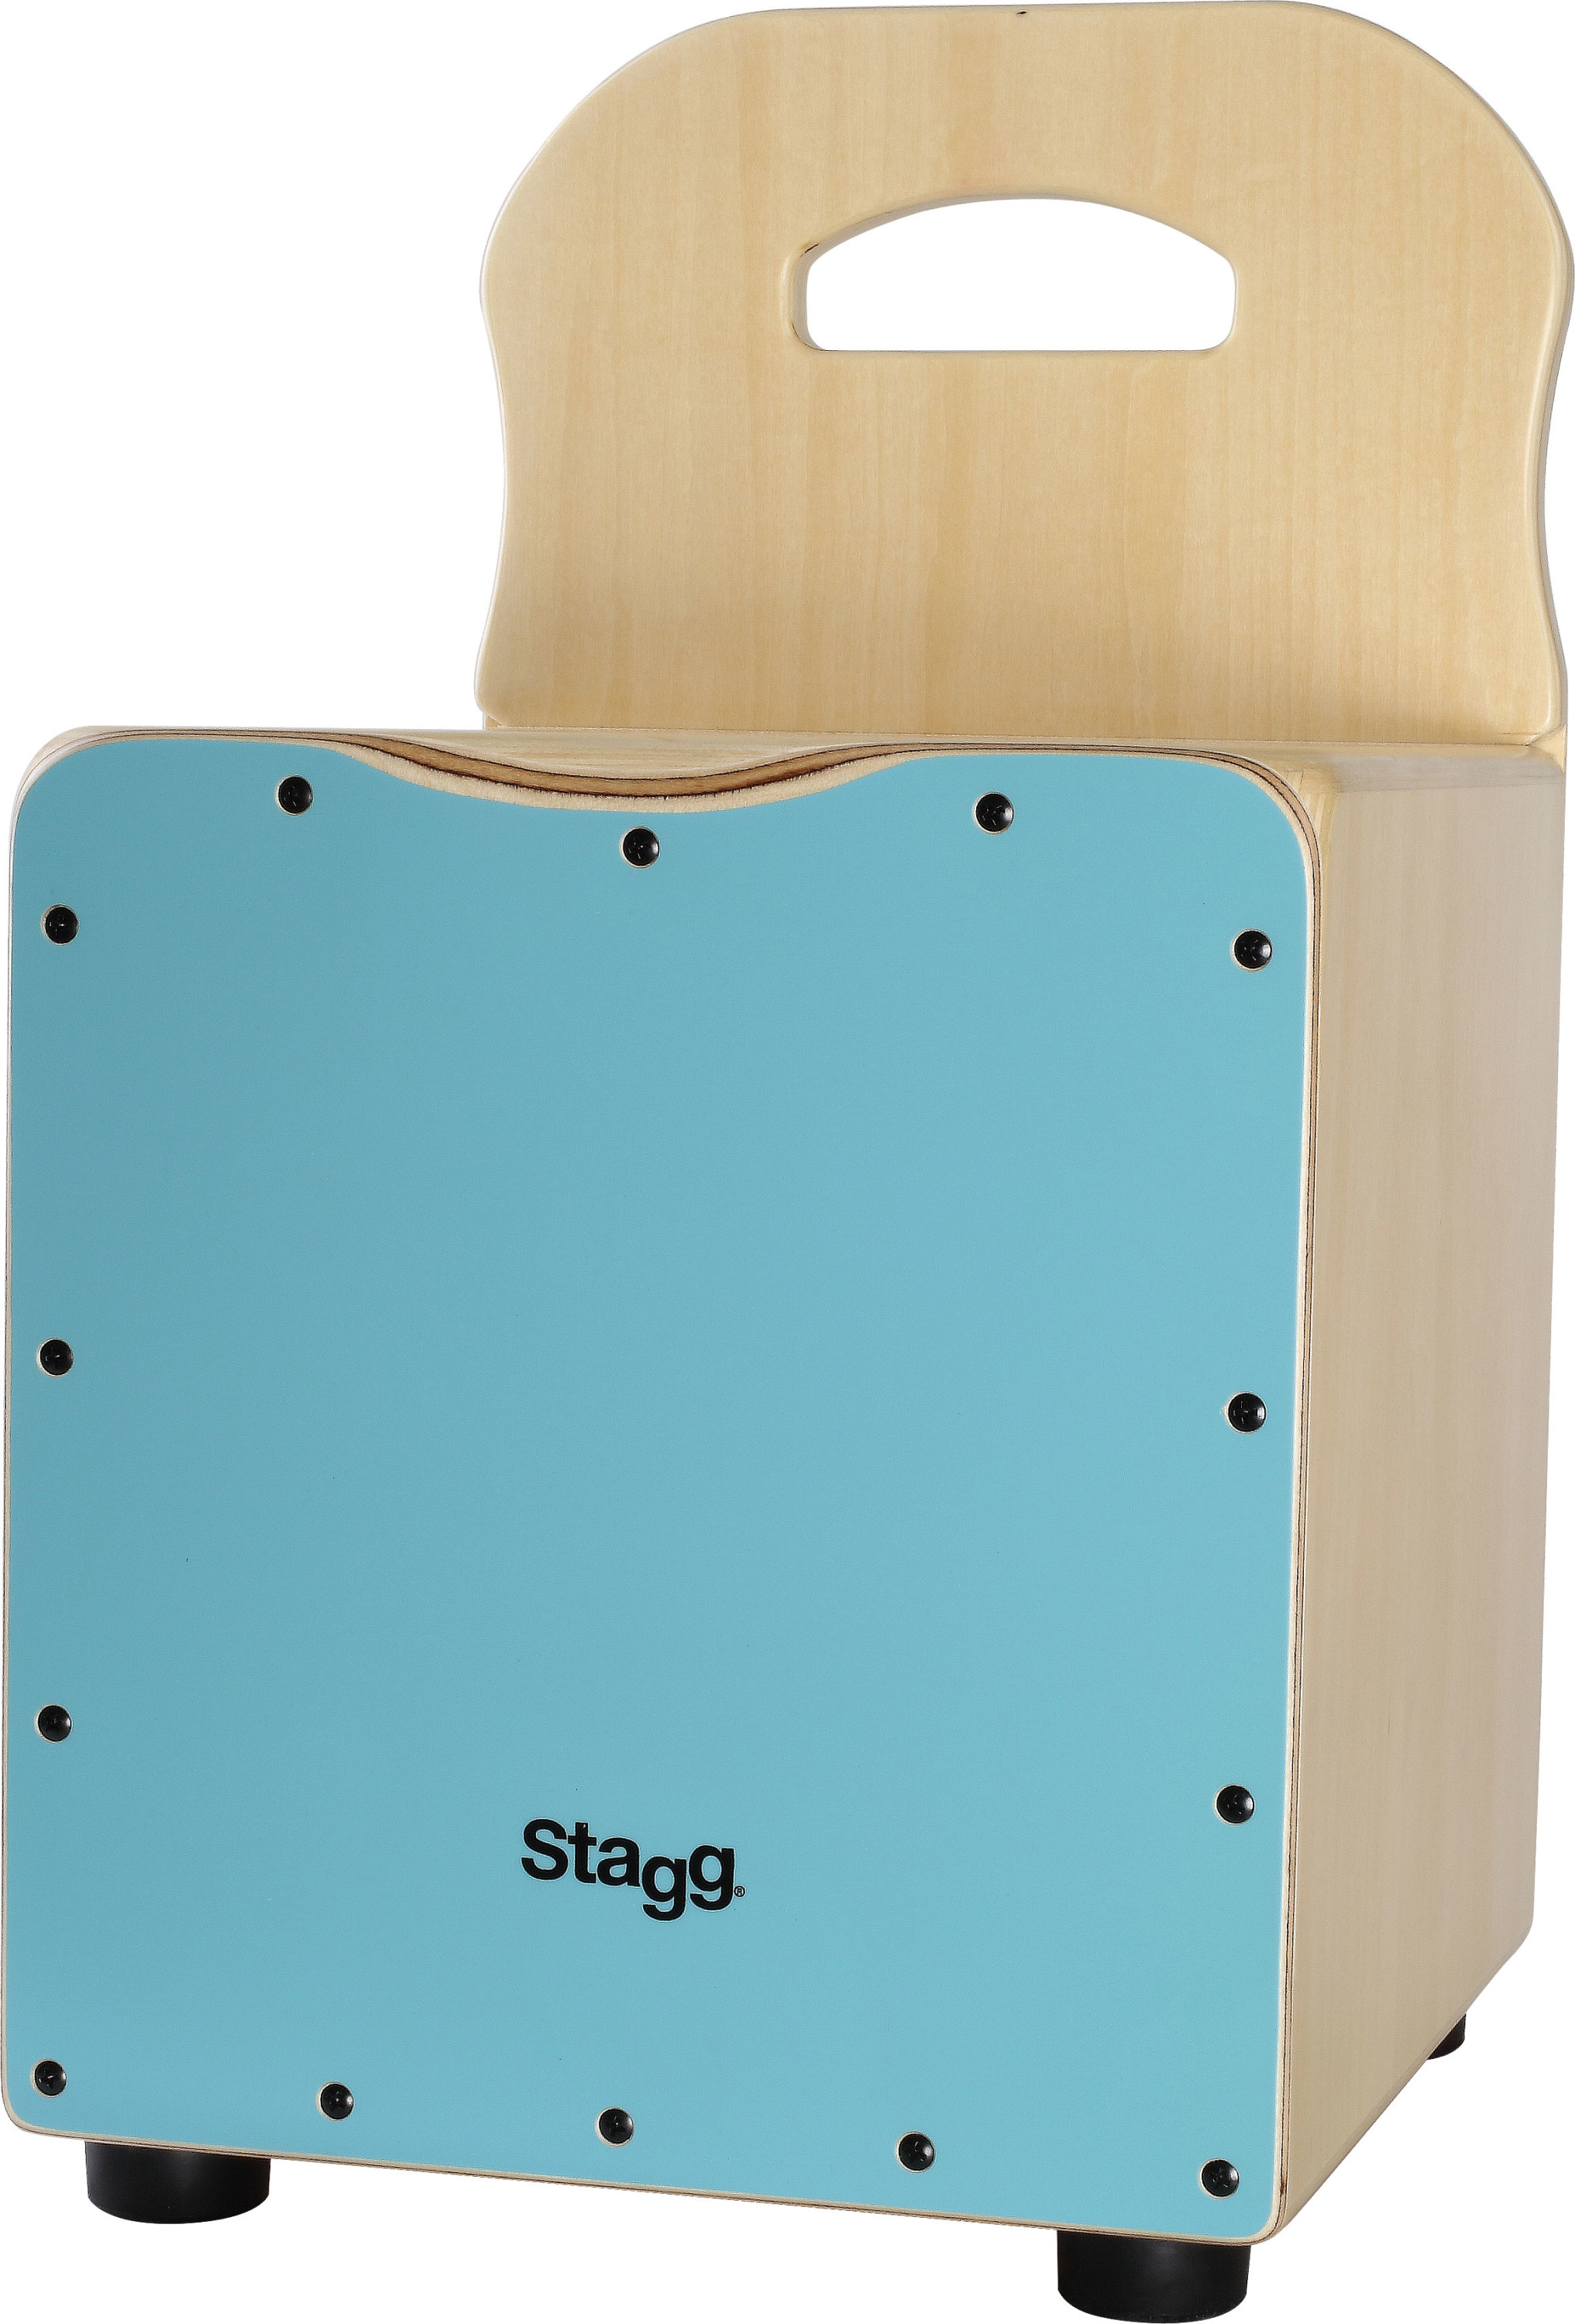 Stagg Easygo Cajon Enfant Bleu - Percusión para golpear - Variation 1